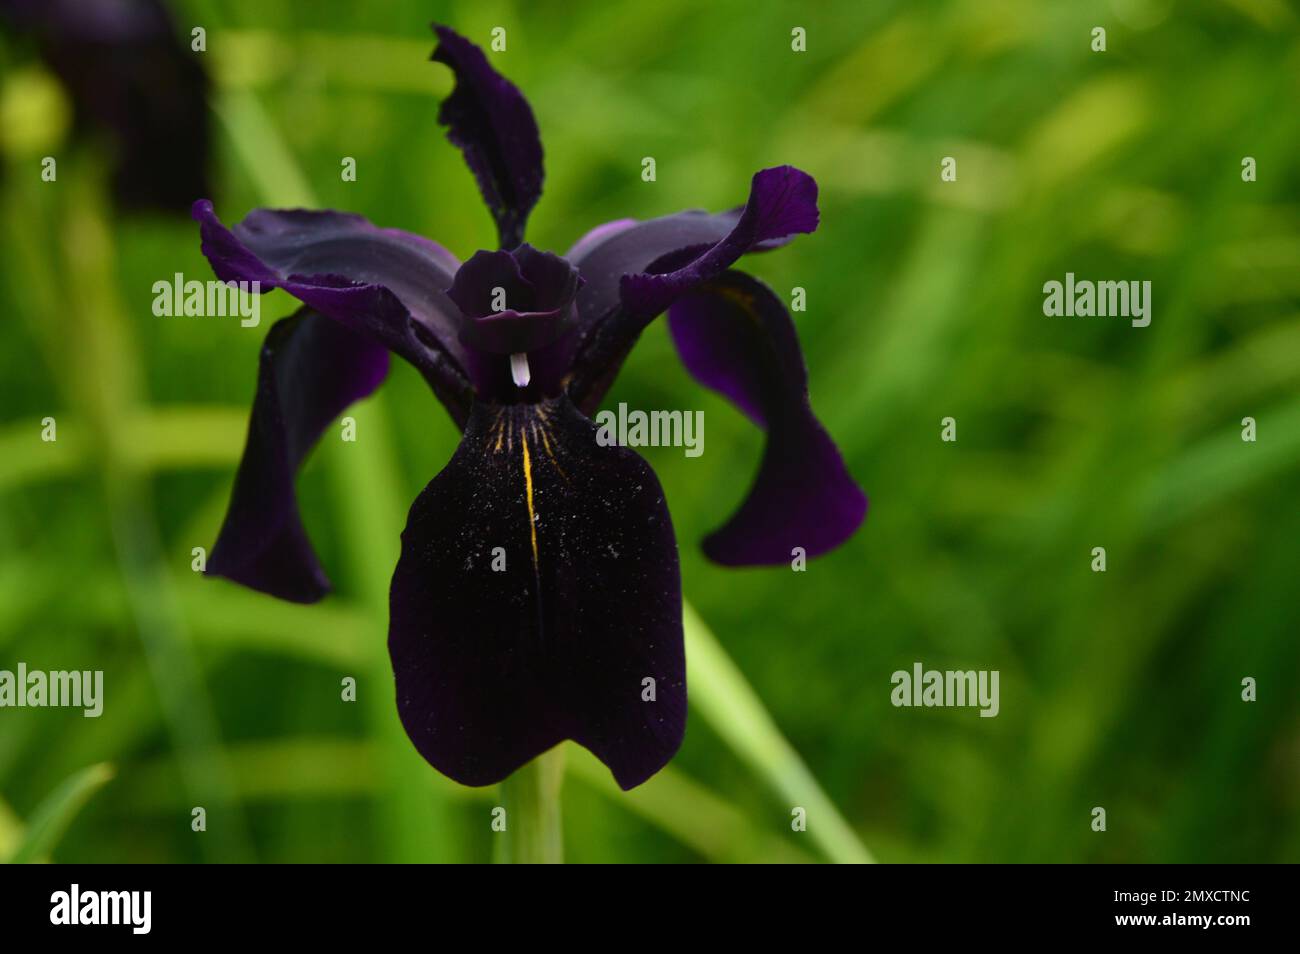 Fleur unique d'iris noirâtre-violet Chrysographes 'Black-flowerd' (Black-flower) cultivée à RHS Garden Harlow Carr, Harrogate, Yorkshire, Angleterre, Royaume-Uni. Banque D'Images